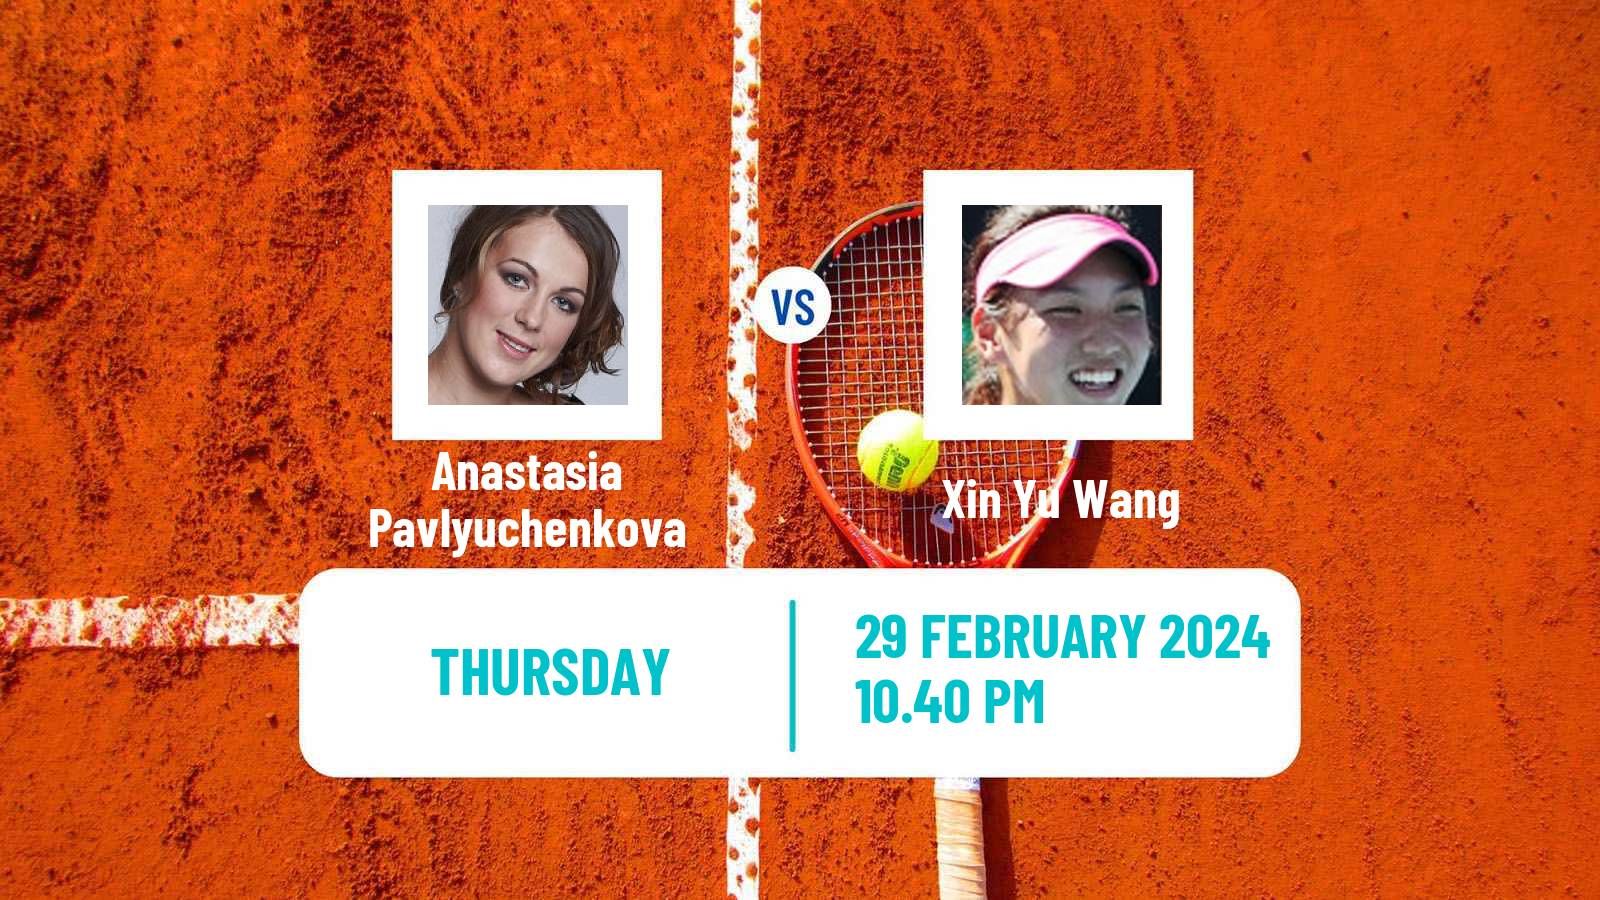 Tennis WTA San Diego Anastasia Pavlyuchenkova - Xin Yu Wang